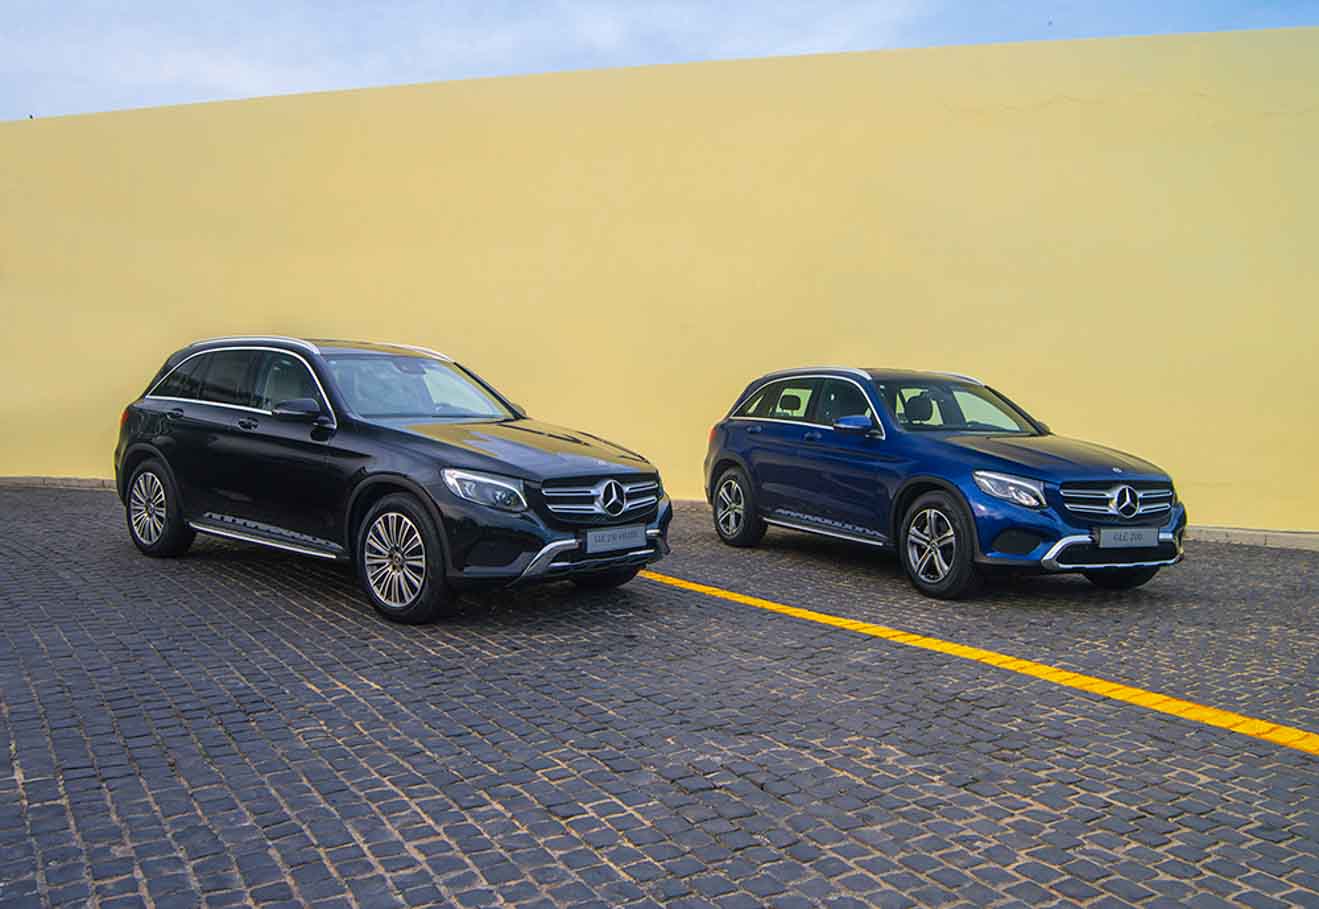 Giá xe Mercedes GLC cập nhật tháng 10/2018: Phiên bản một cầu GLC200 giá từ 1,684 tỷ đồng - 1